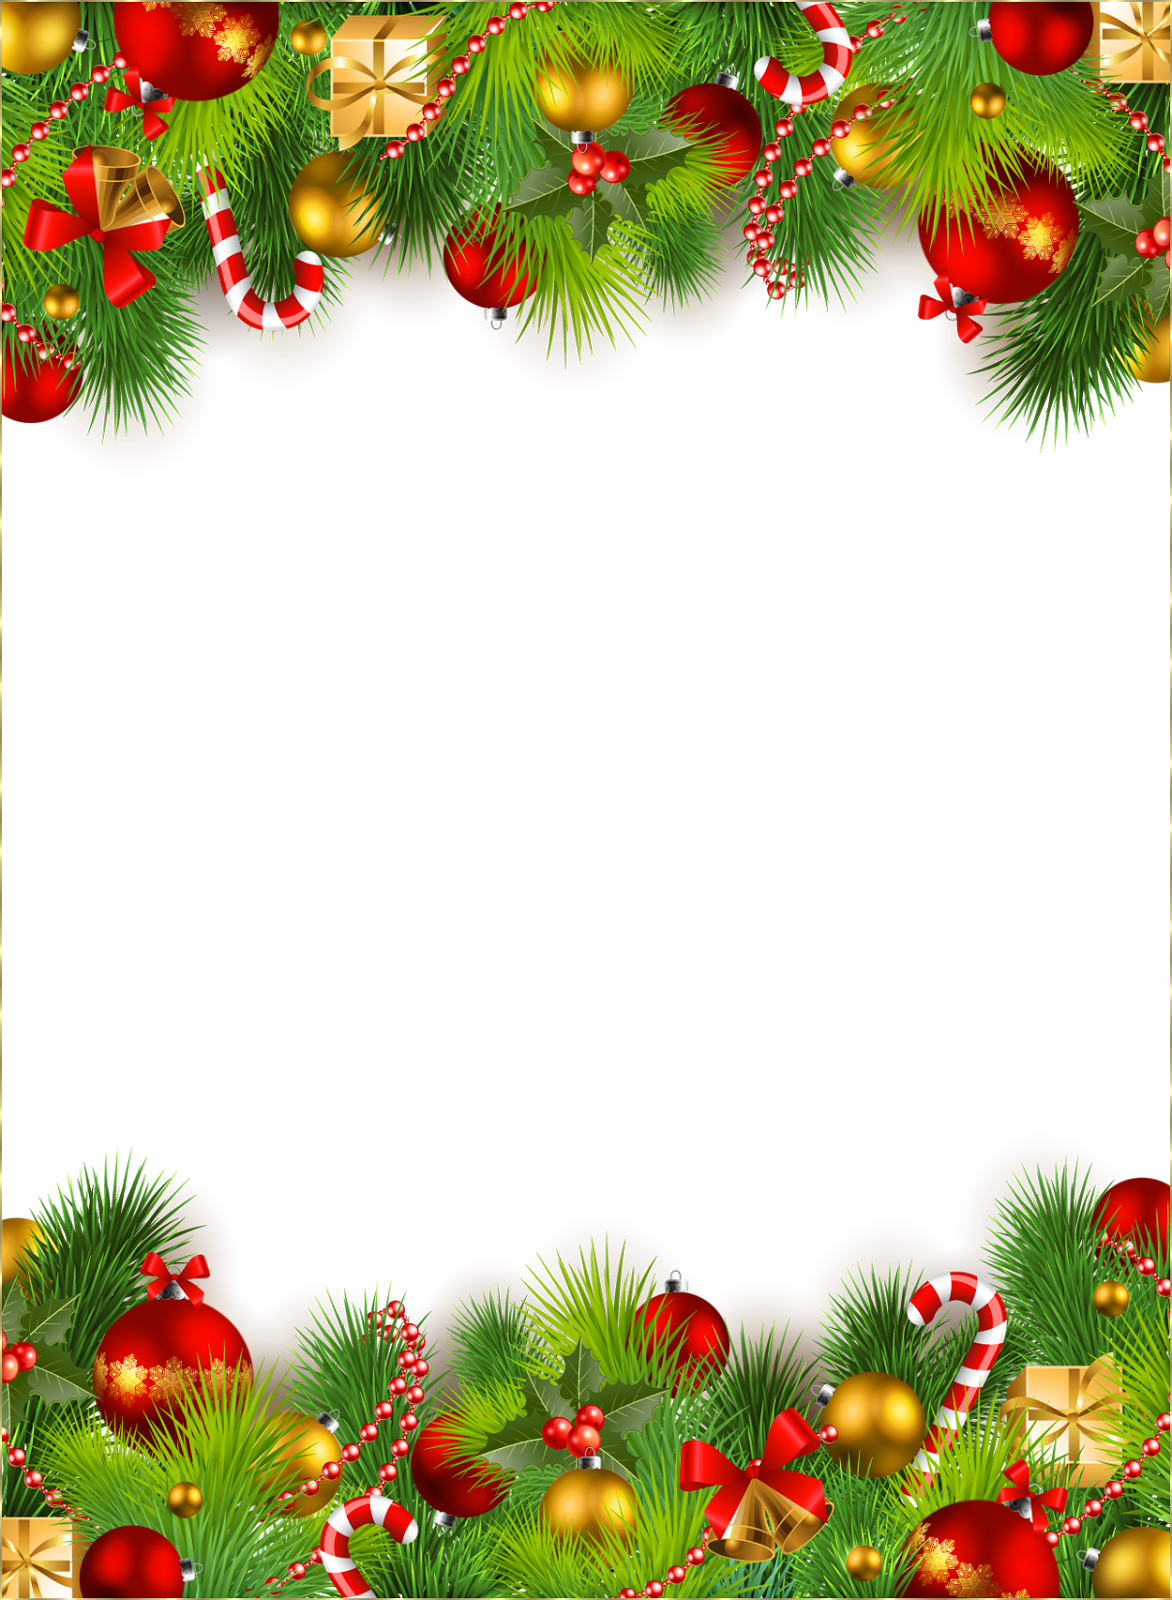 名前編集壁紙無料ダウンロード,クリスマスの飾り,クリスマスツリー,クリスマスオーナメント,モミ,木